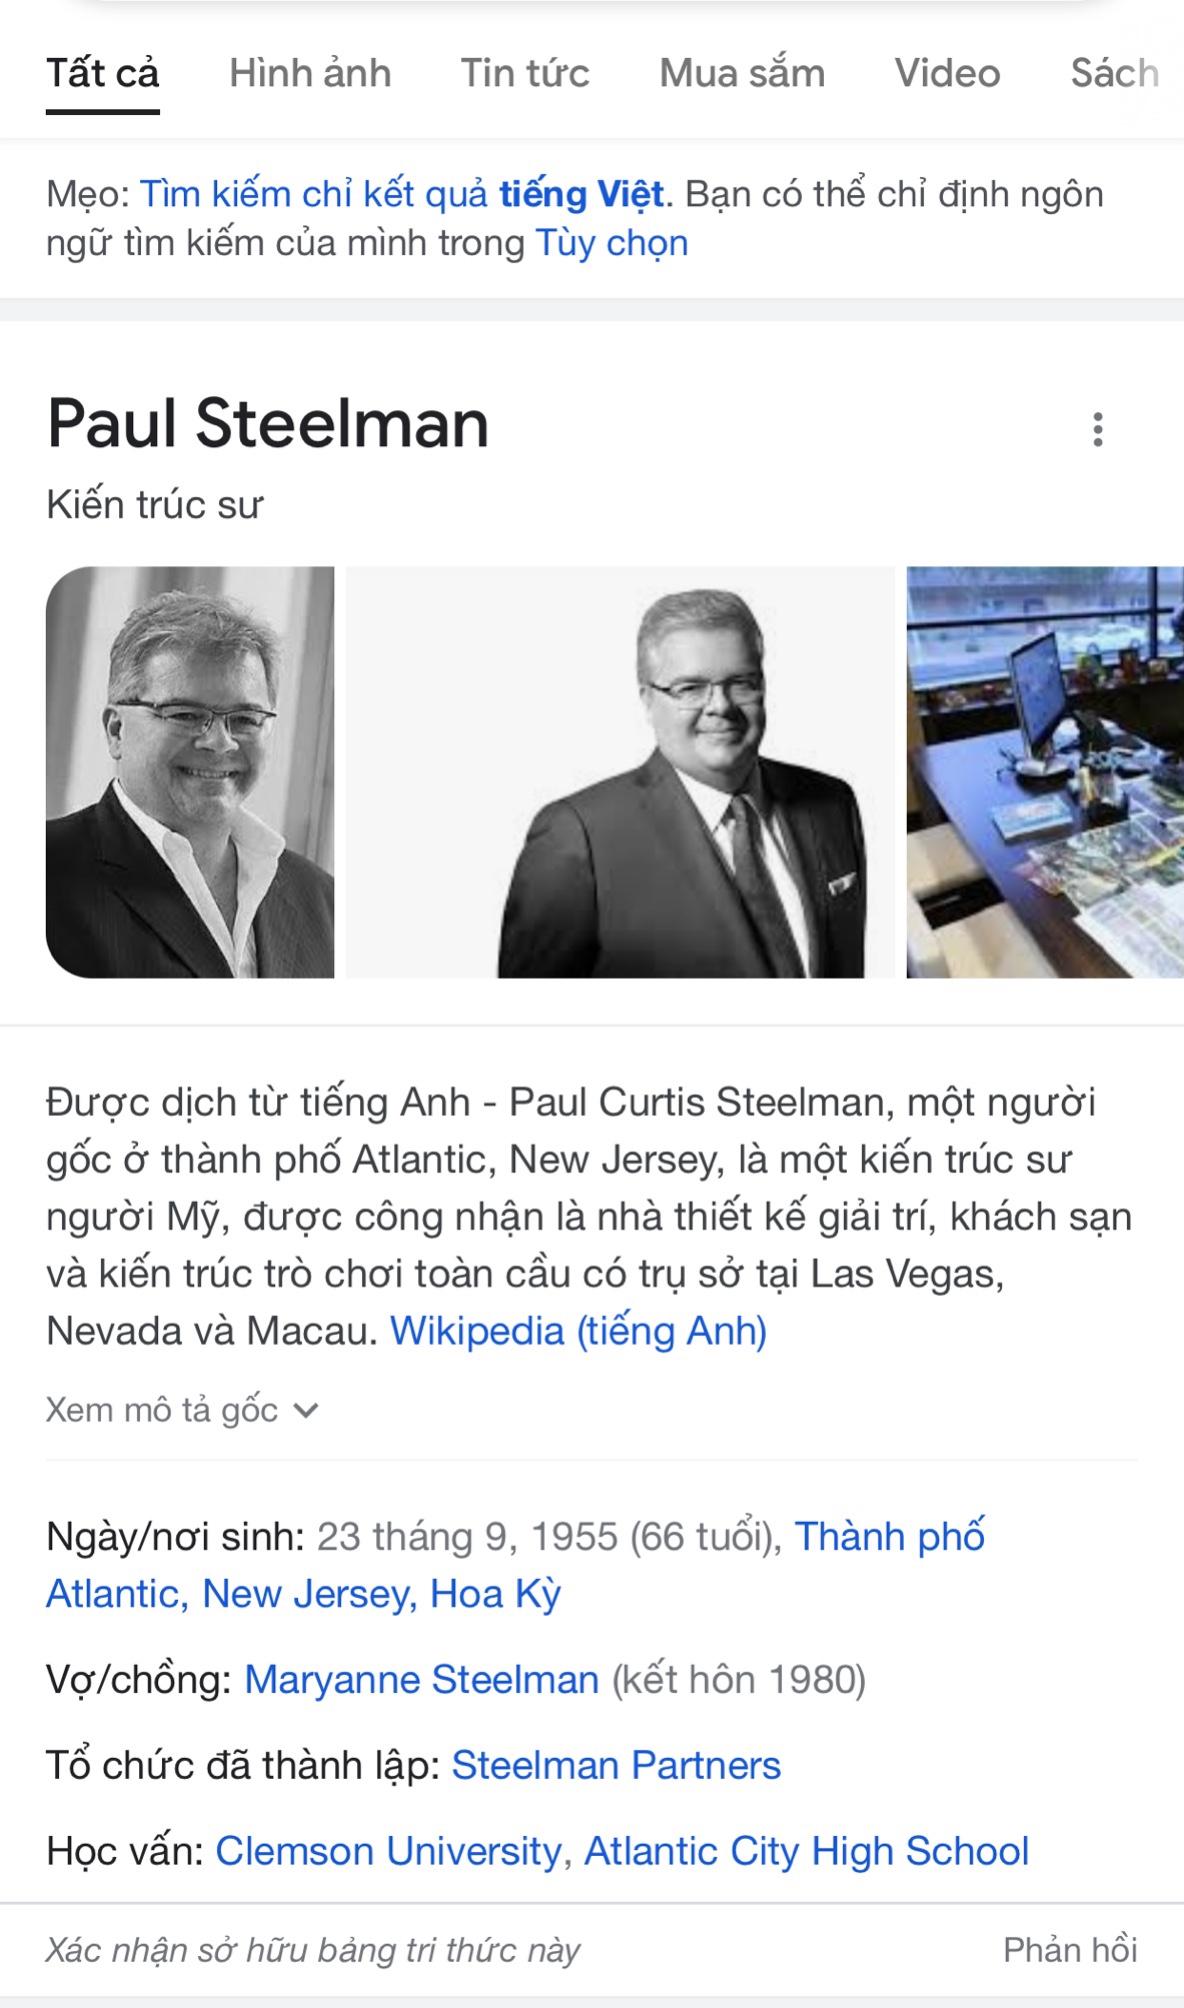 Ông Paul Steelman nhà thiết kế kiến trúc Hải Giang Merry Land